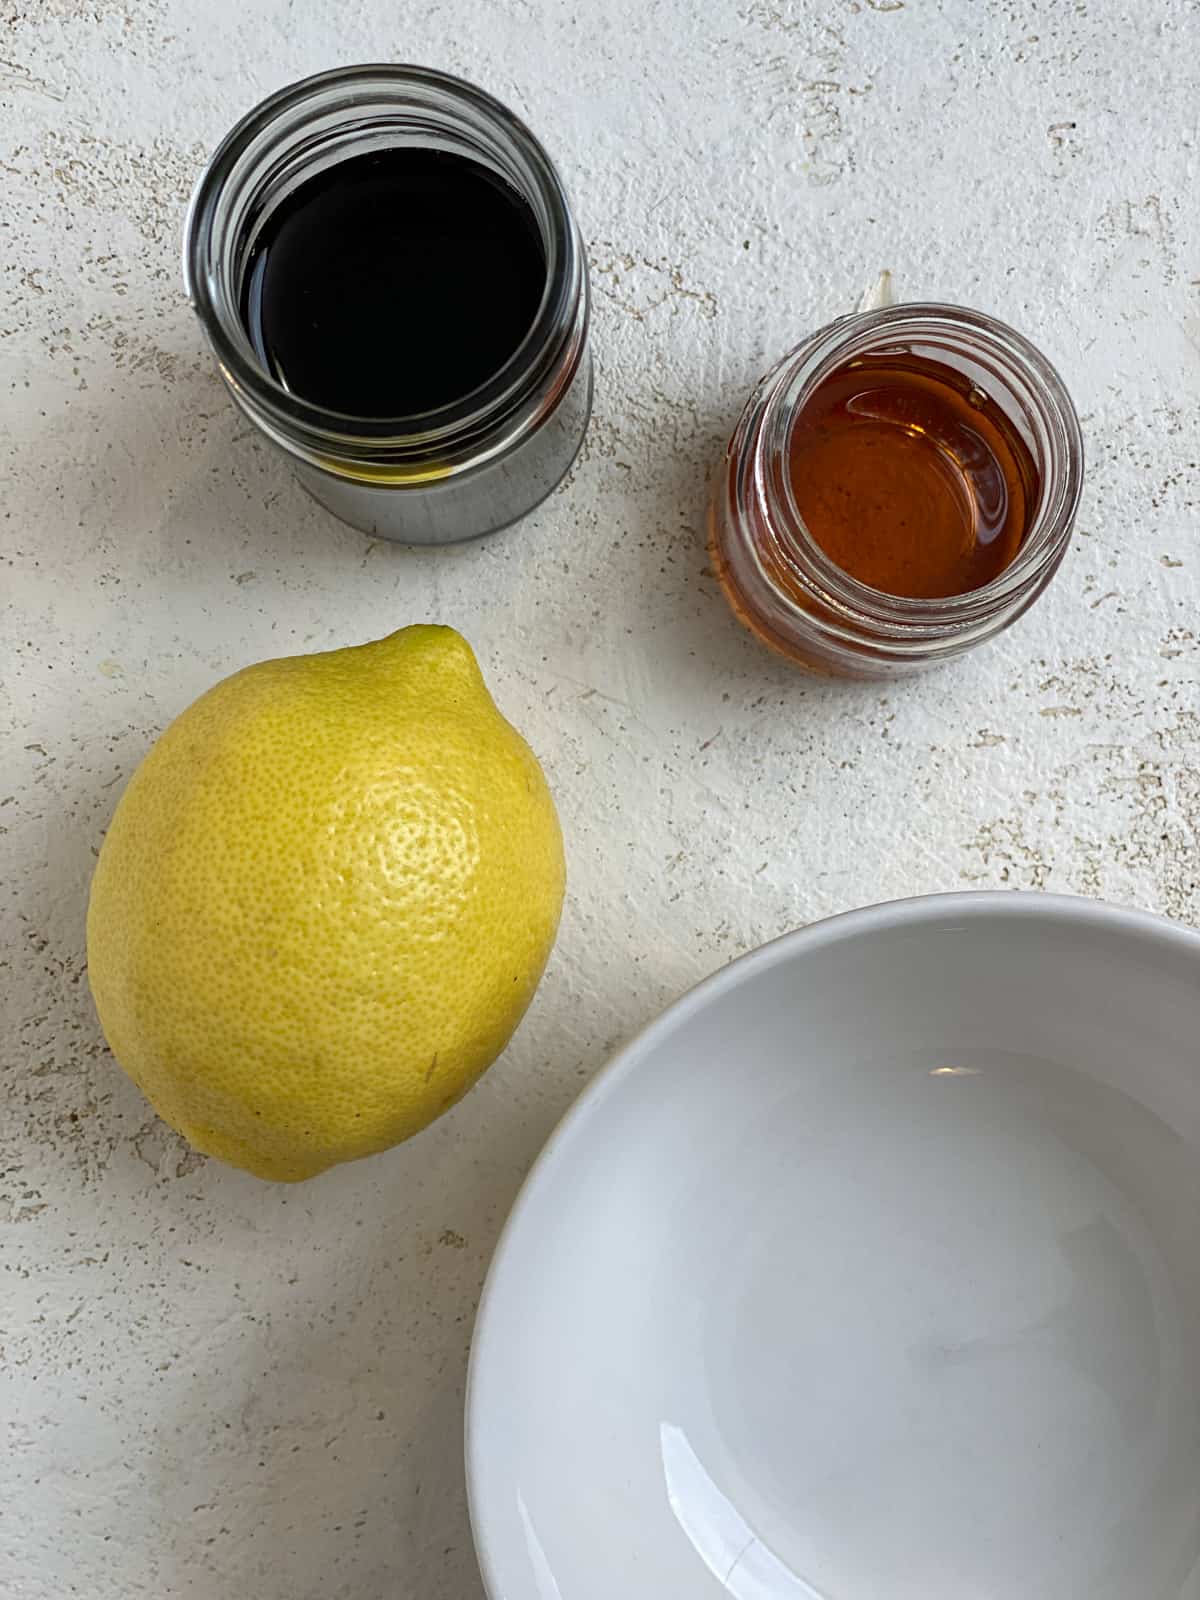 مواد لازم برای توفو ریحان لیمویی روی سطح سفید